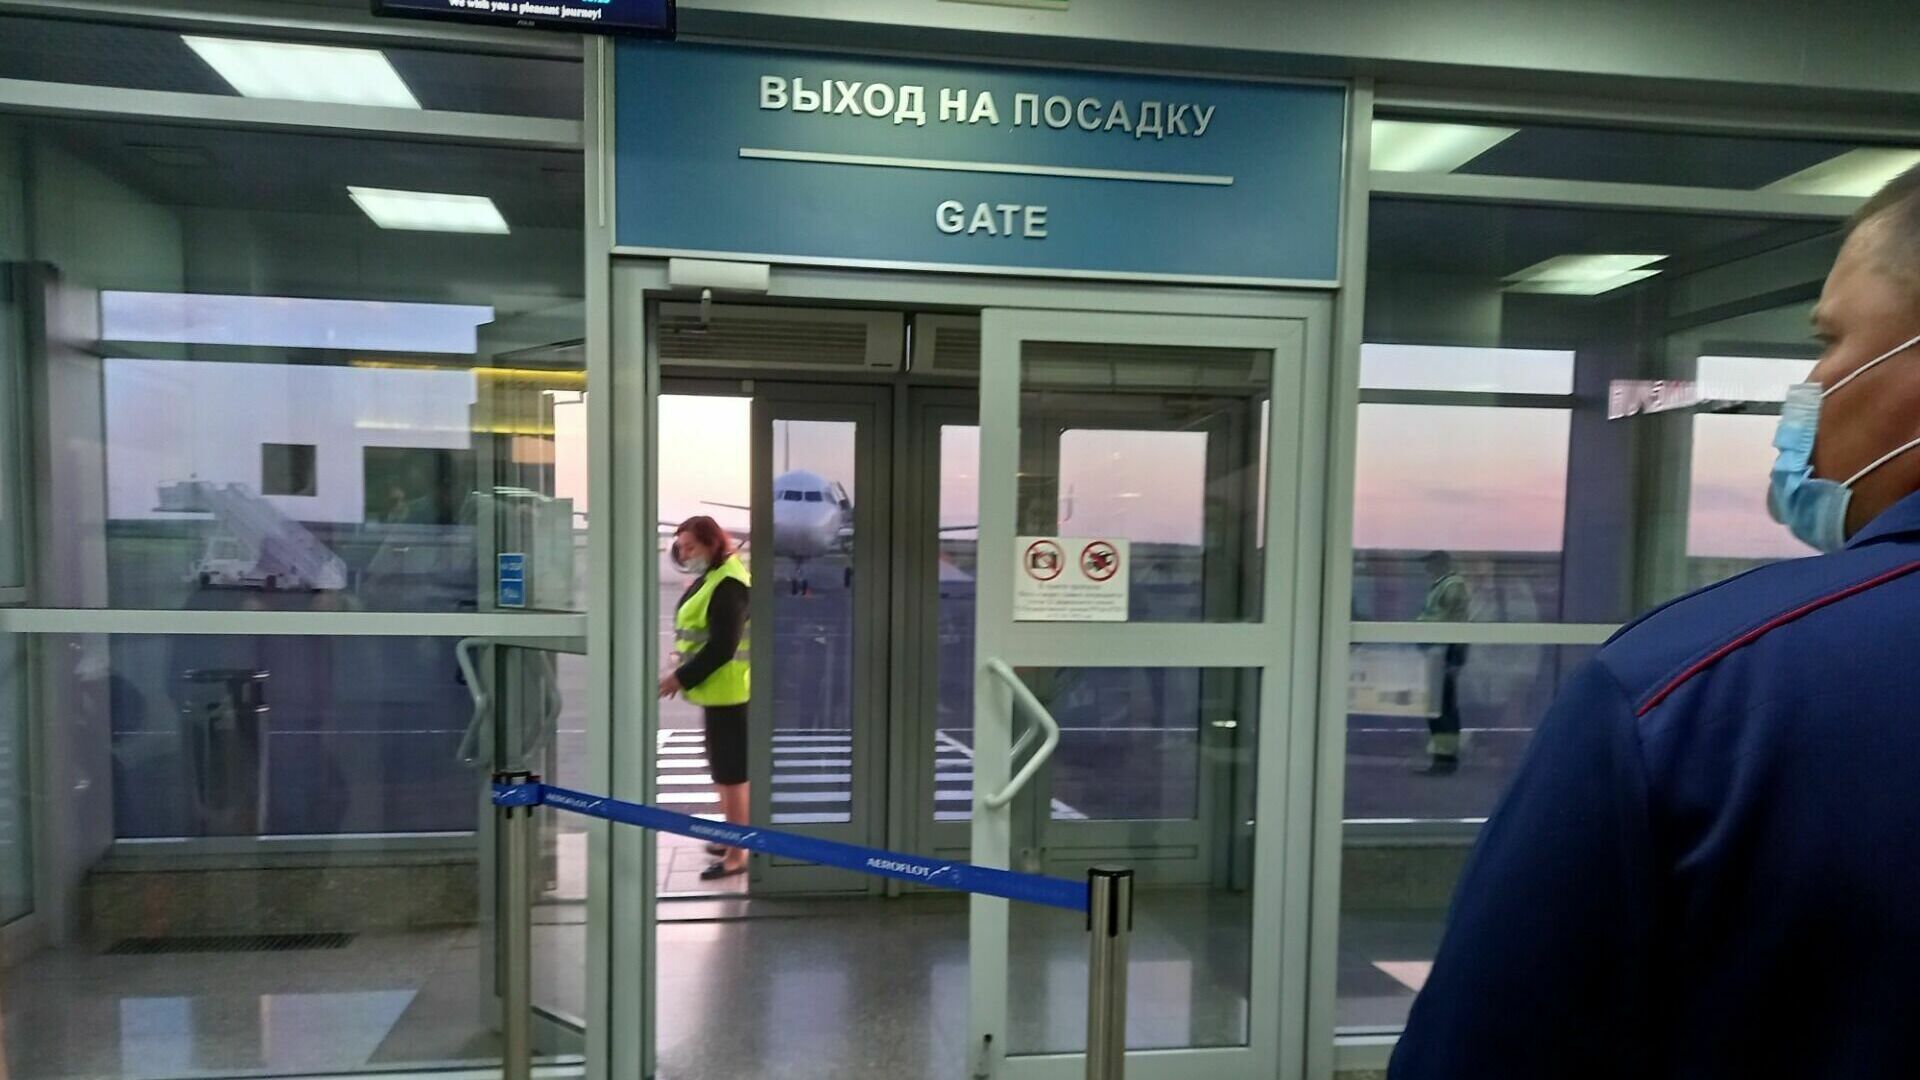 Правительство региона рассказало, куда делись 806 млн рублей от продажи аэропорта